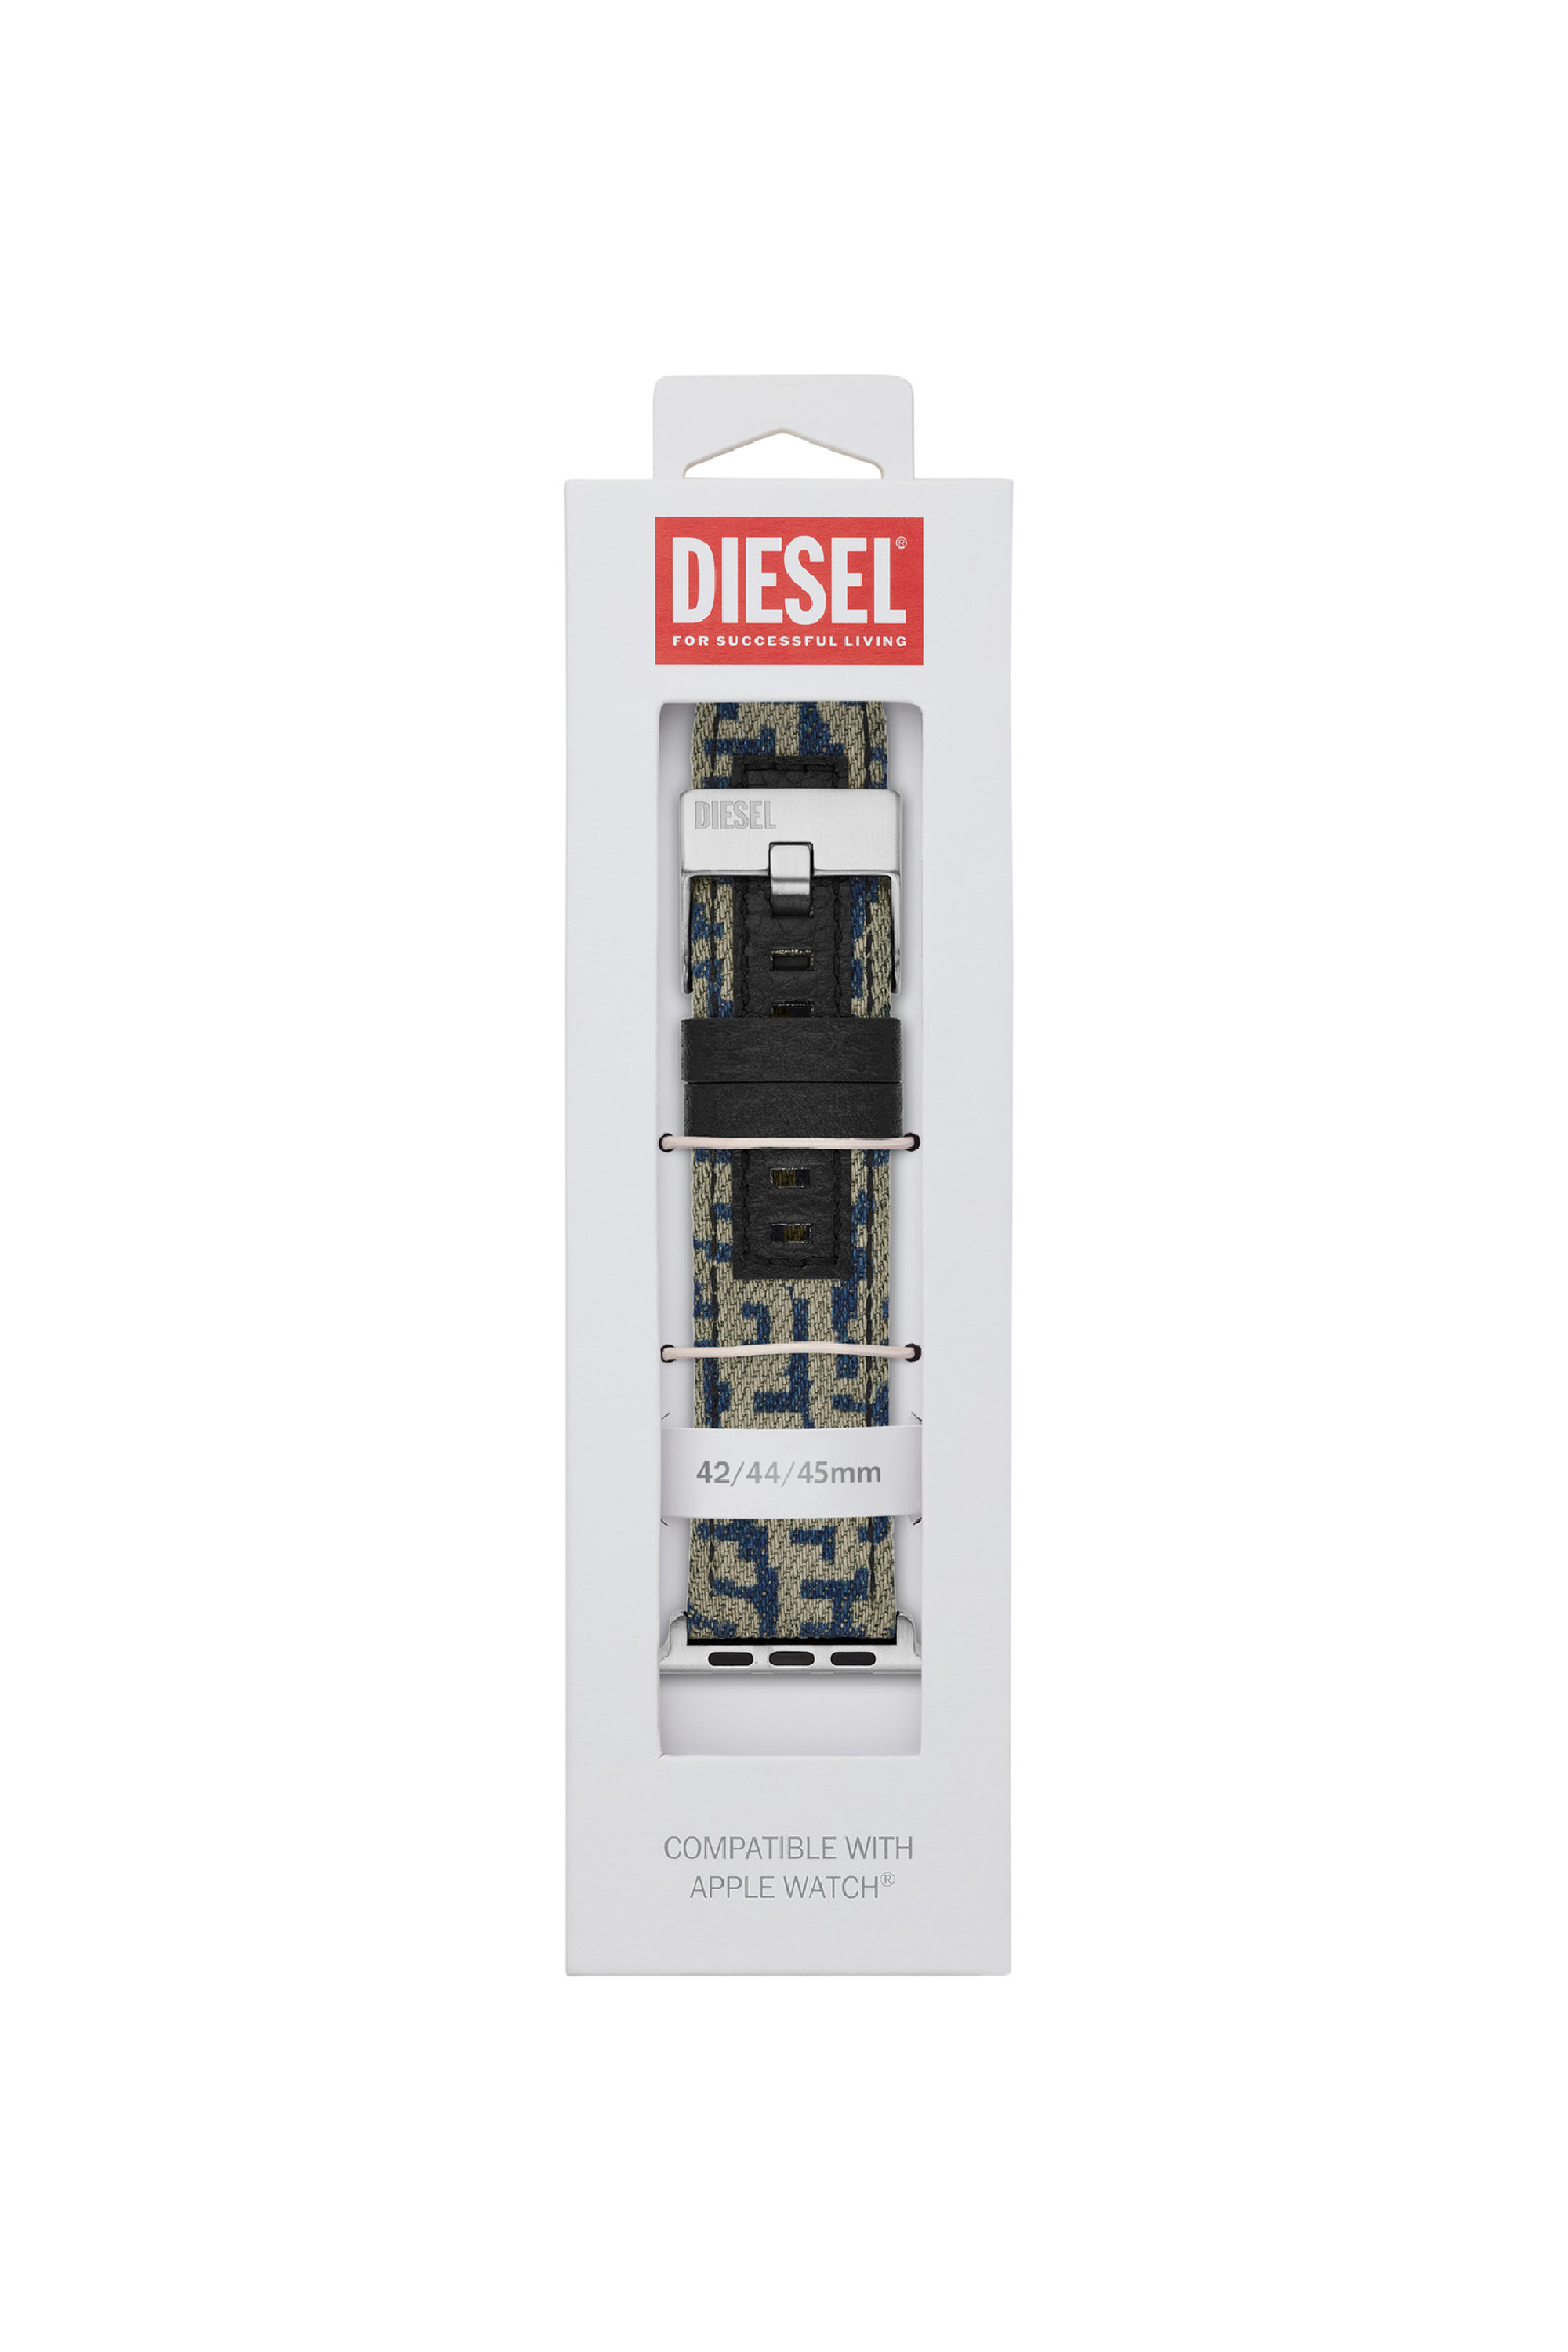 Diesel - DSS0013, Blau - Image 2